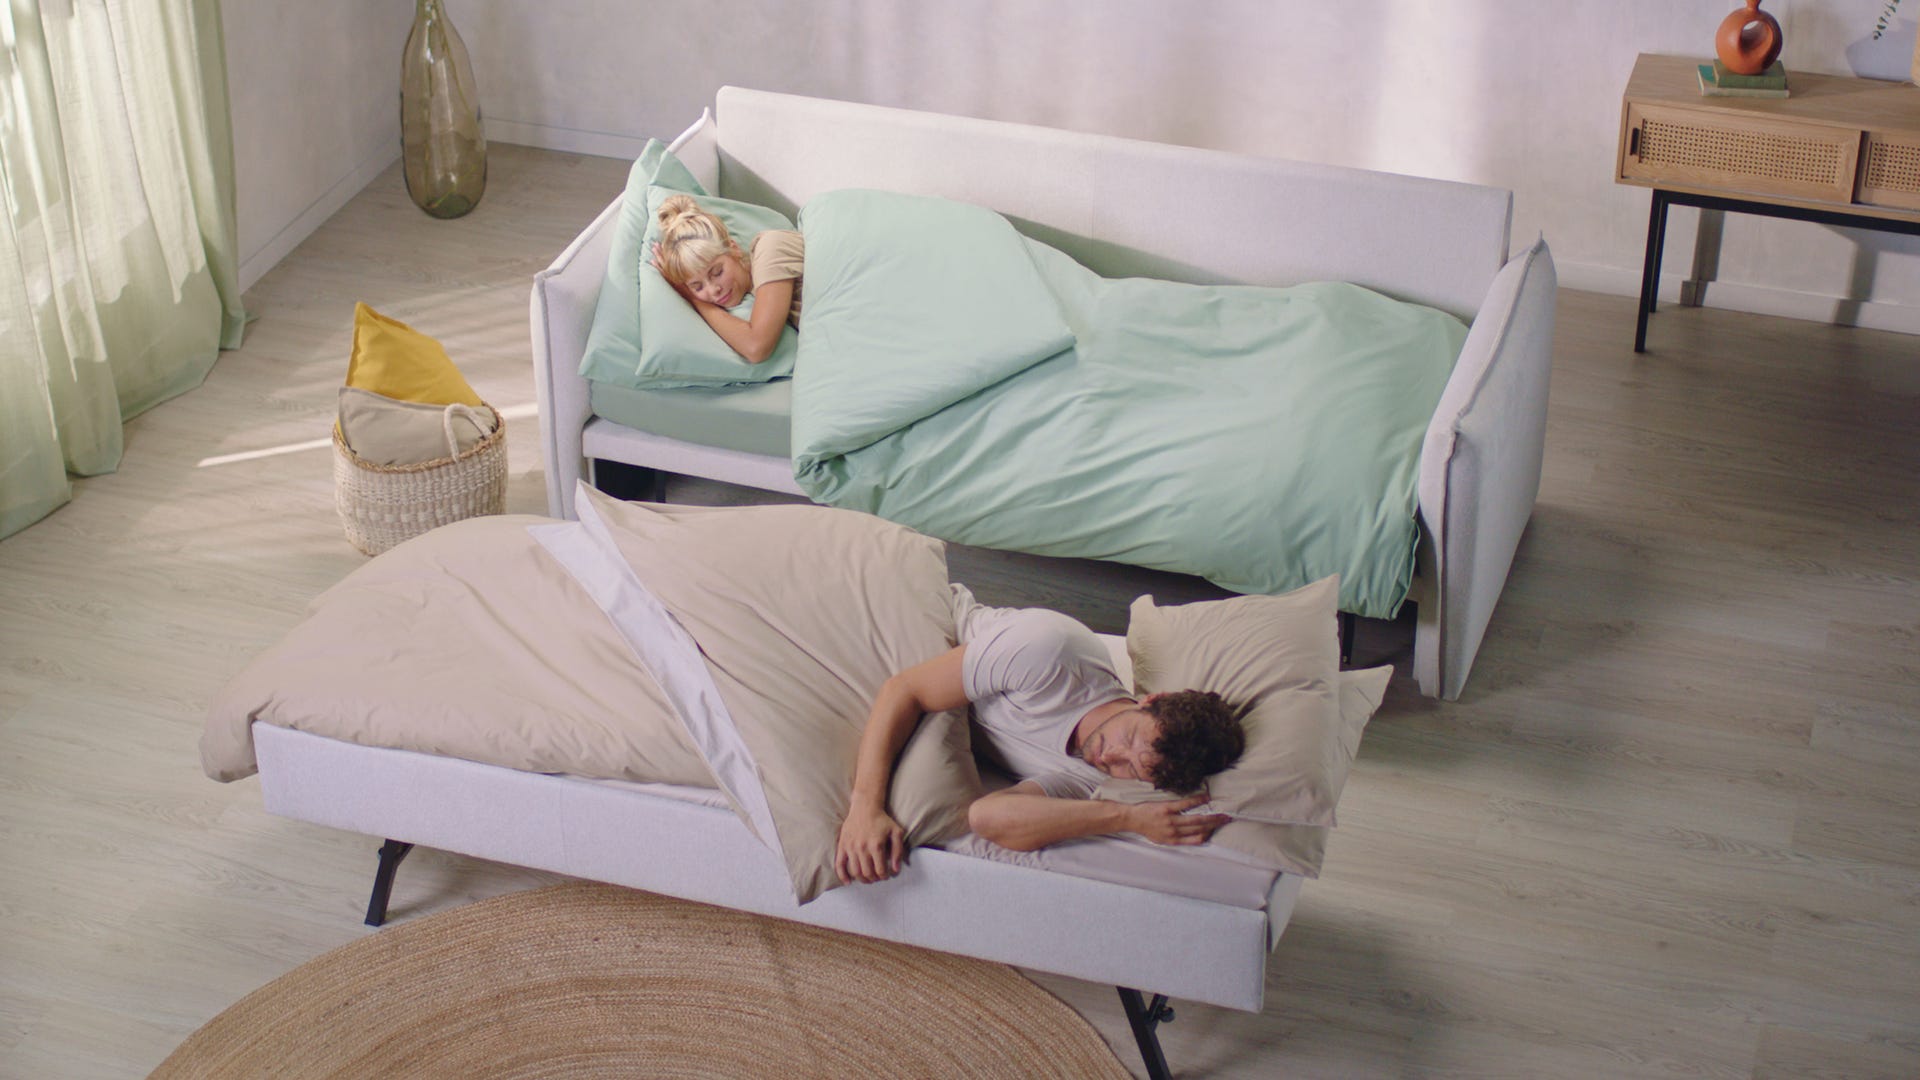 sofa cama convertible en 2 camas individuales donde duerme comodamente una mujer y un hombre